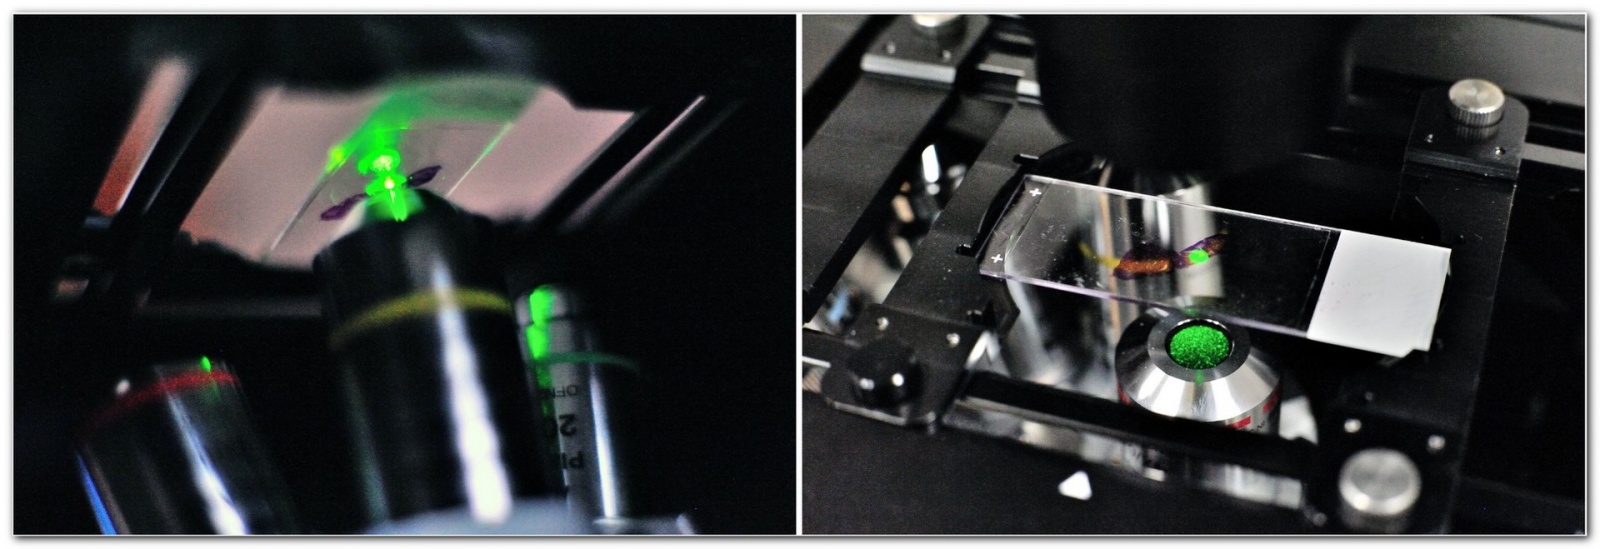 «Диагностировать рак поможет лазер», или Как устроен лазерный флуоресцентный гиперспектральный микроскоп - 17